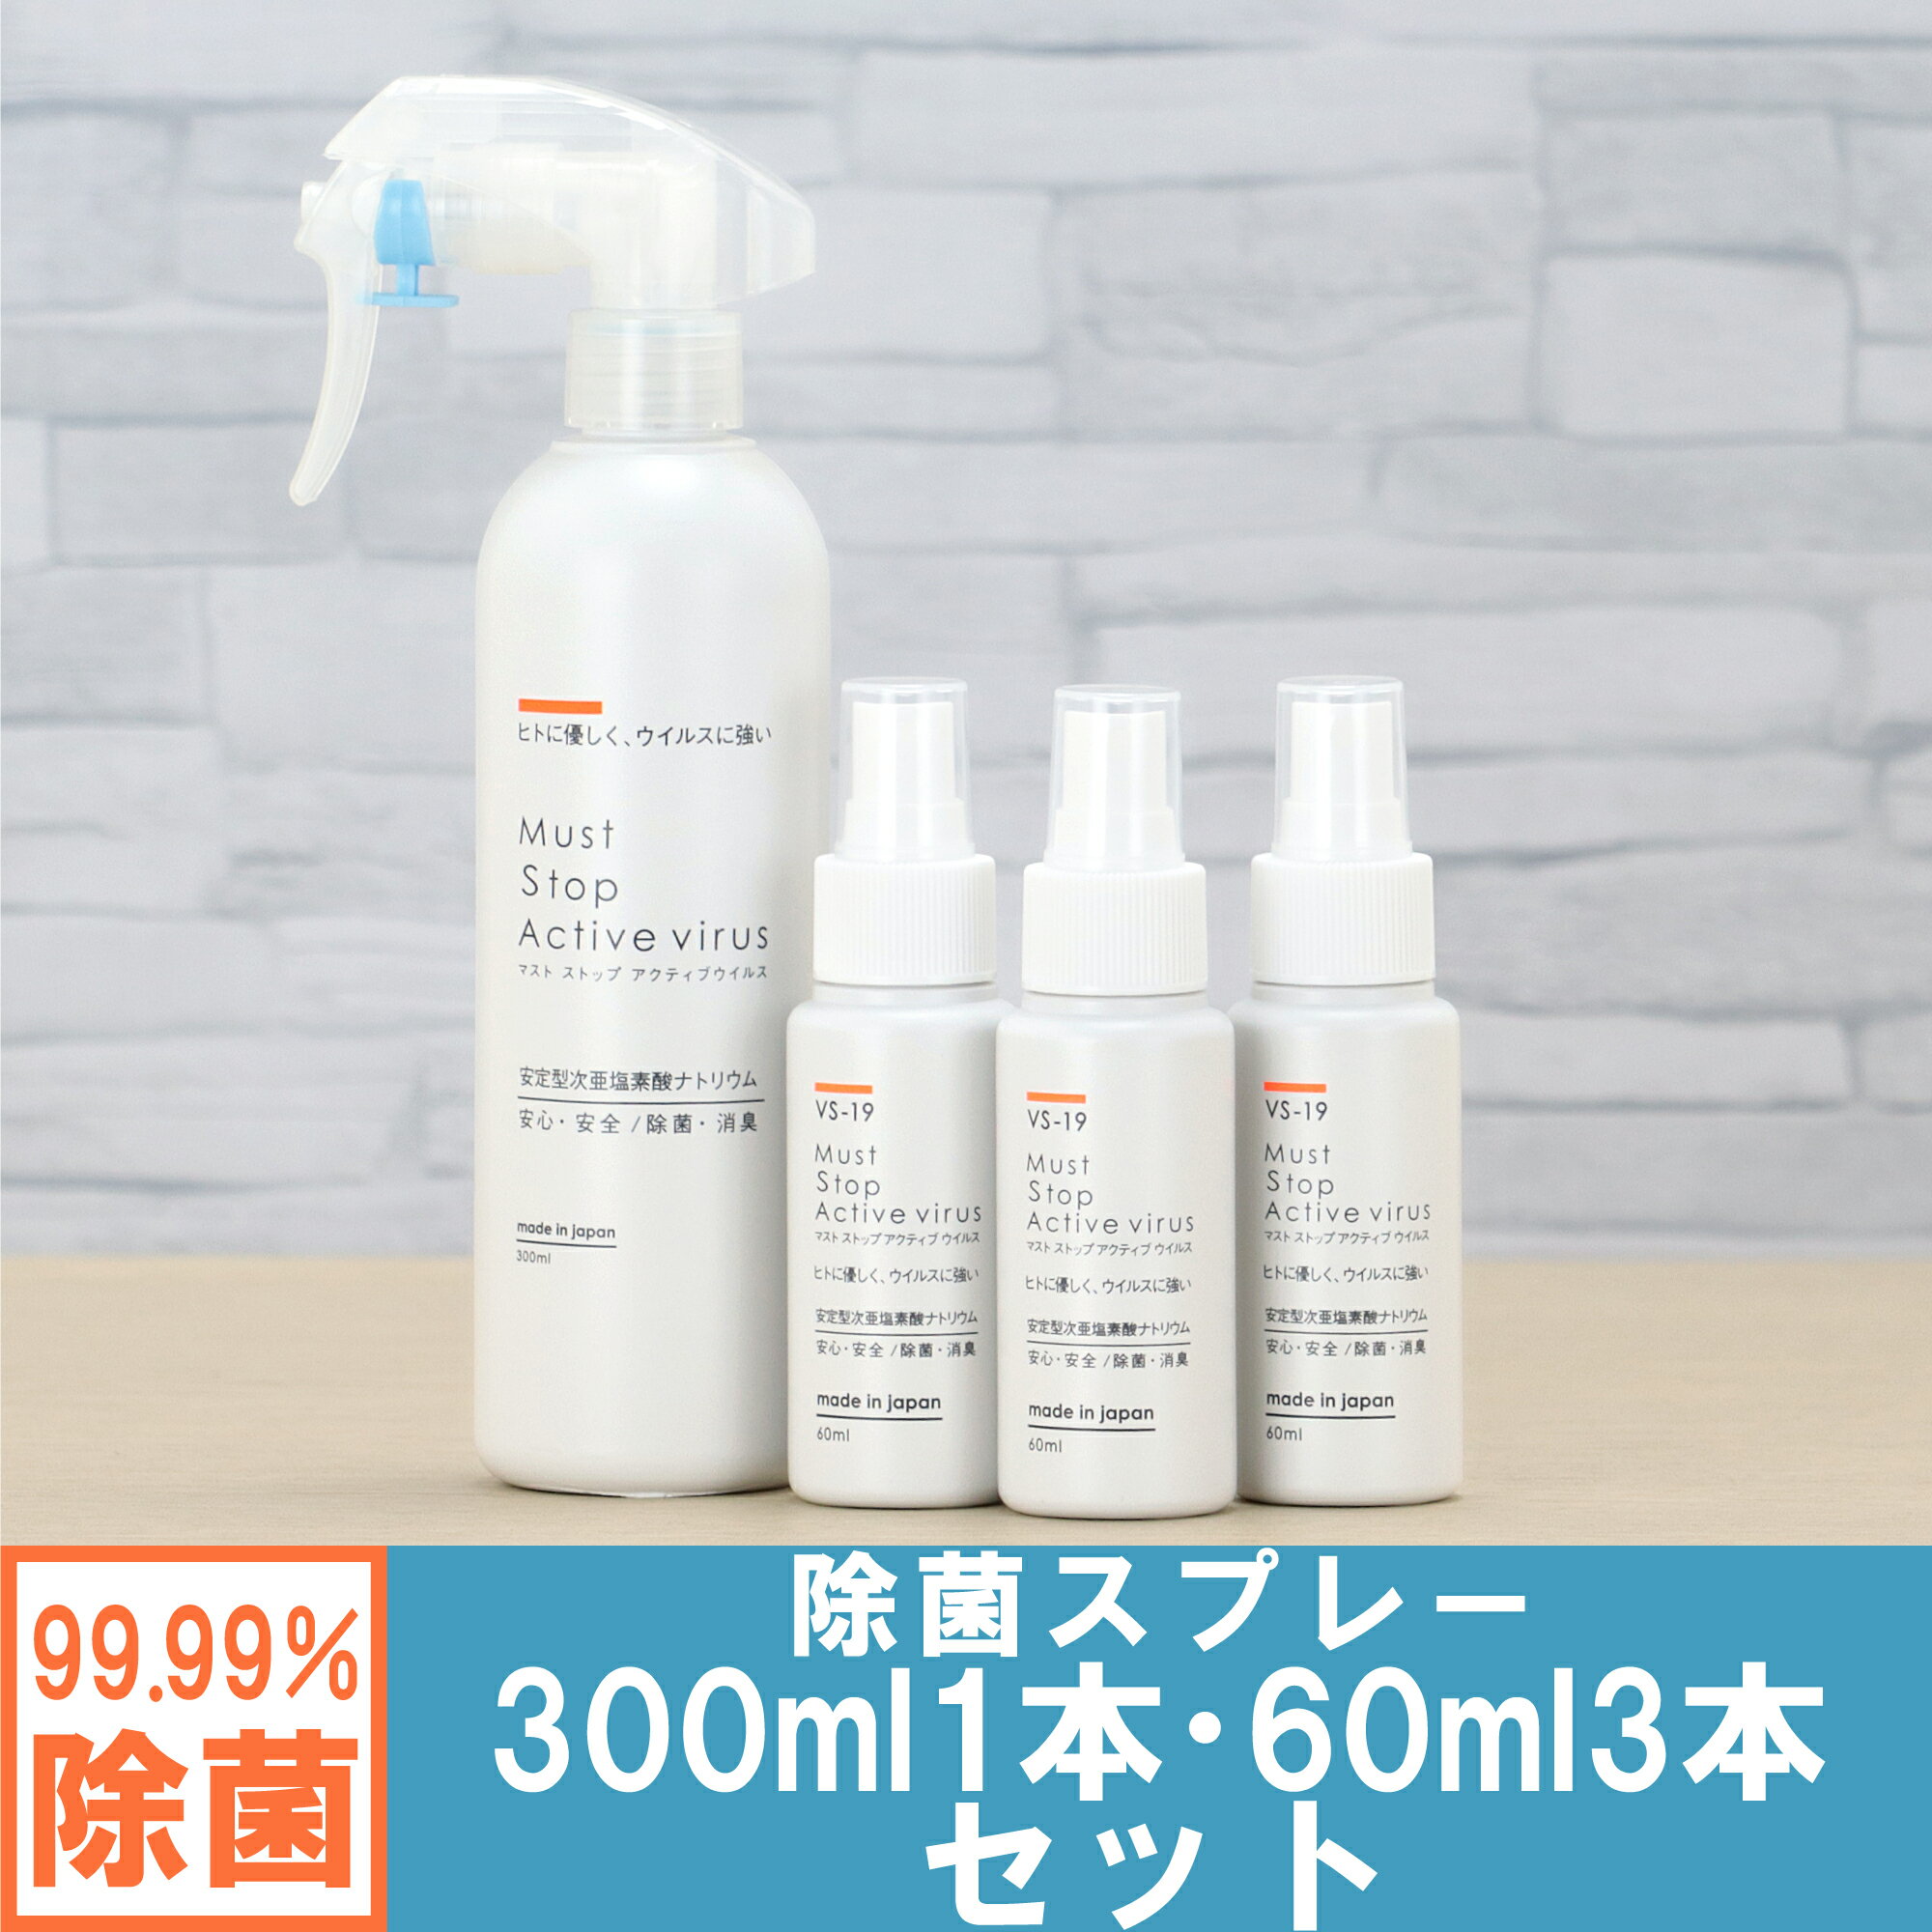 コロナにも効く 除菌スプレー (300ml×1本+60ml×3本） 99%水と同じ成分でアルコールよりも強力な除菌・消臭・低刺激を実現 マストストップアクティブウイルス[安定型次亜塩素酸ナトリウム 100ppm] 日本製